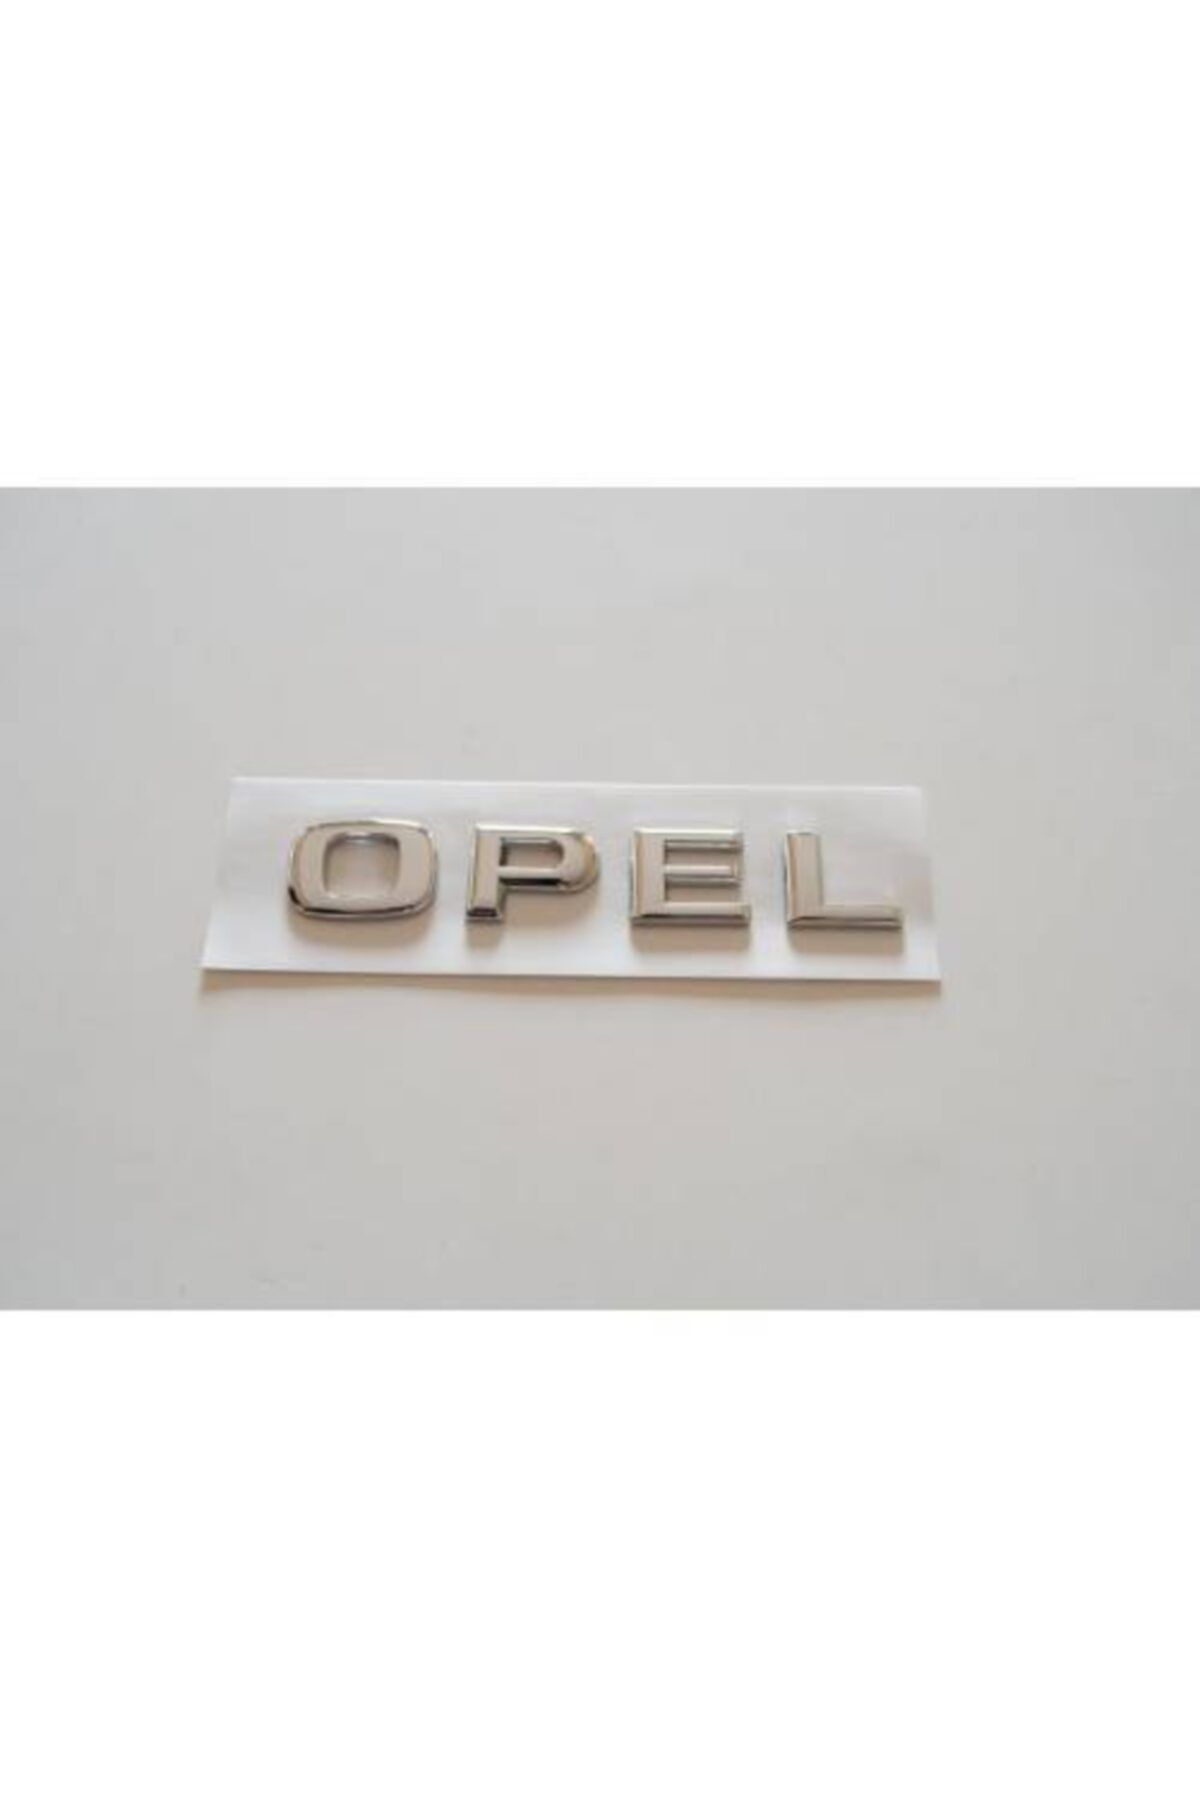 Opel Bagaj Yazısı-vectra C Kasa Uyumlu